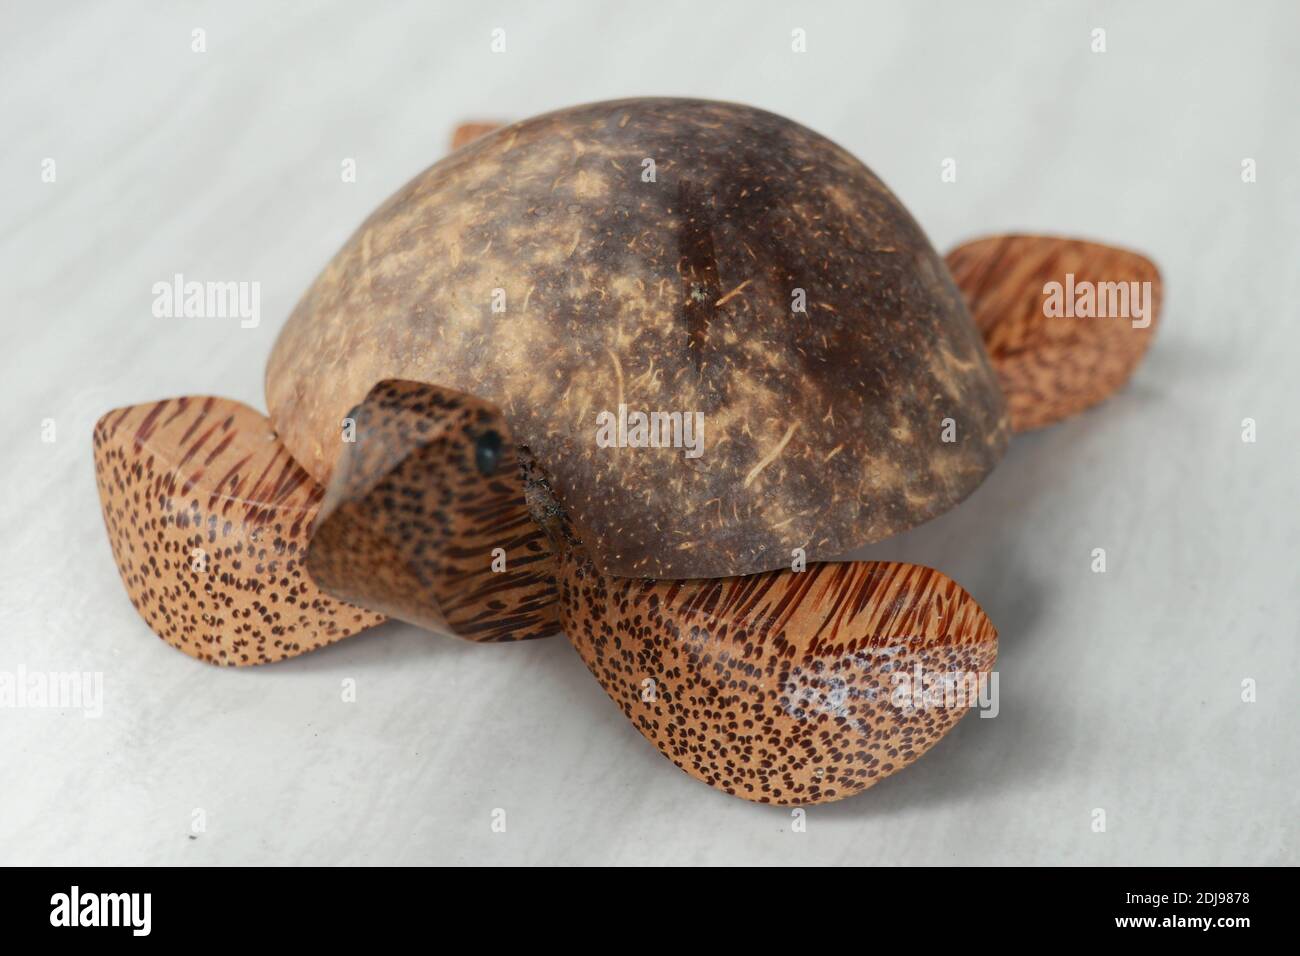 Schildkröte geformter Aschenbecher aus Ton - isoliert auf Weiß. Aschenbecher  Schildkröte aus Kokosnuss Palmholz Stockfotografie - Alamy